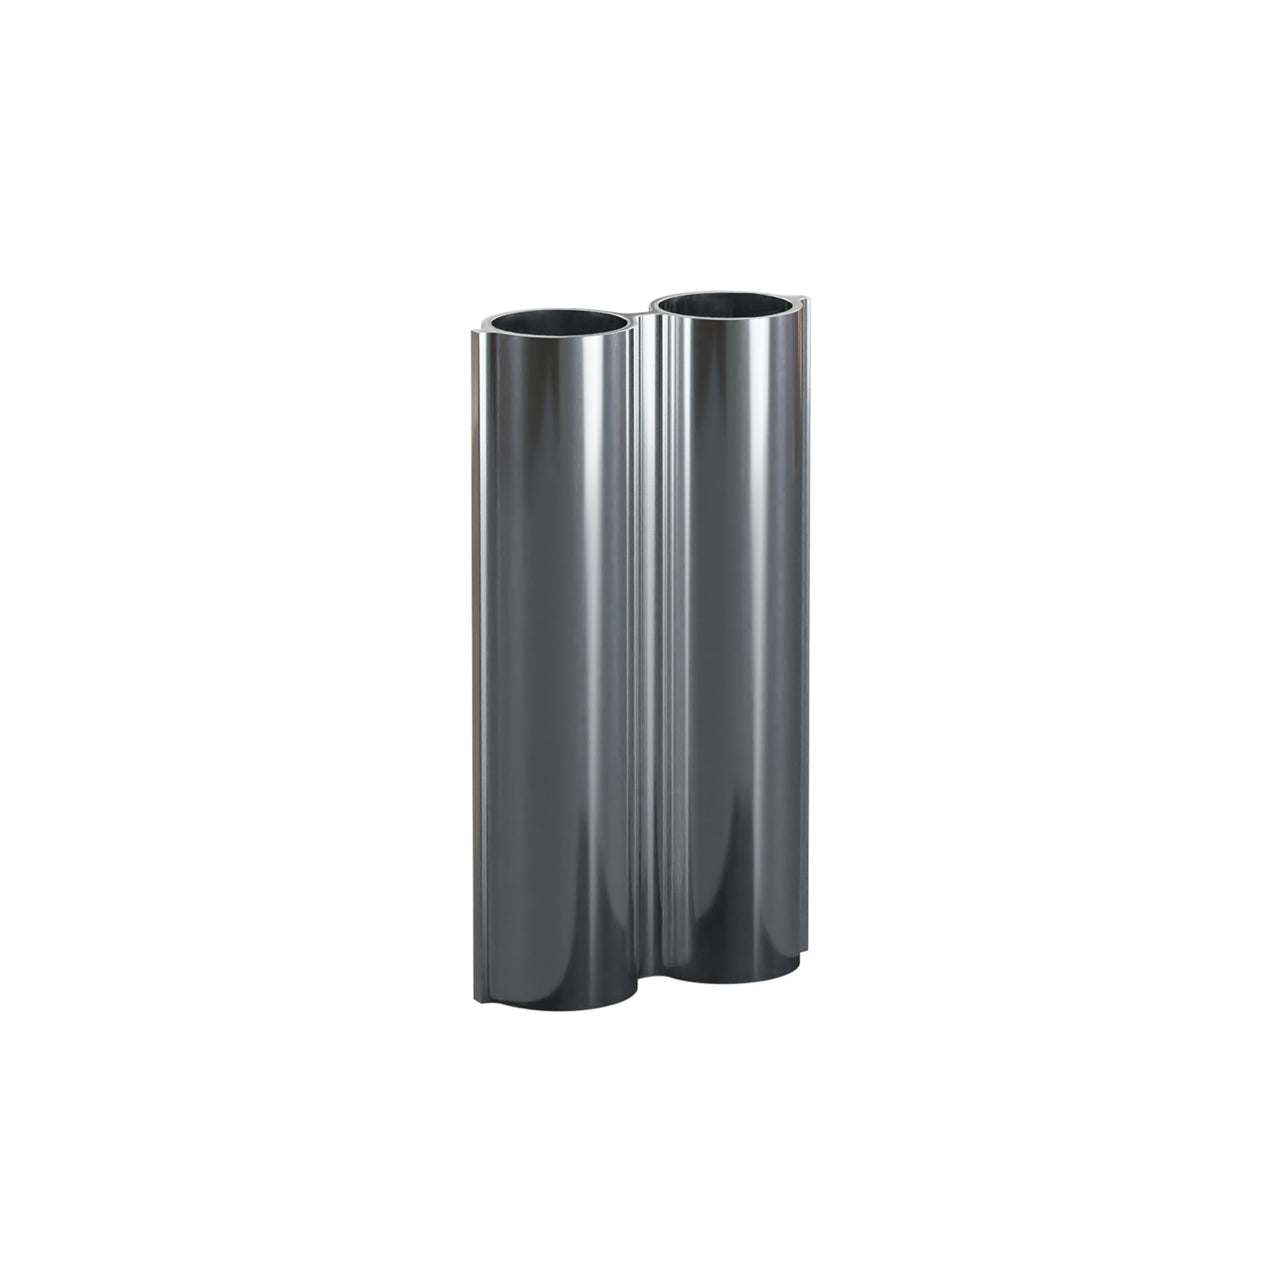 Silo 2VK Vase: Mirror Polished Aluminum